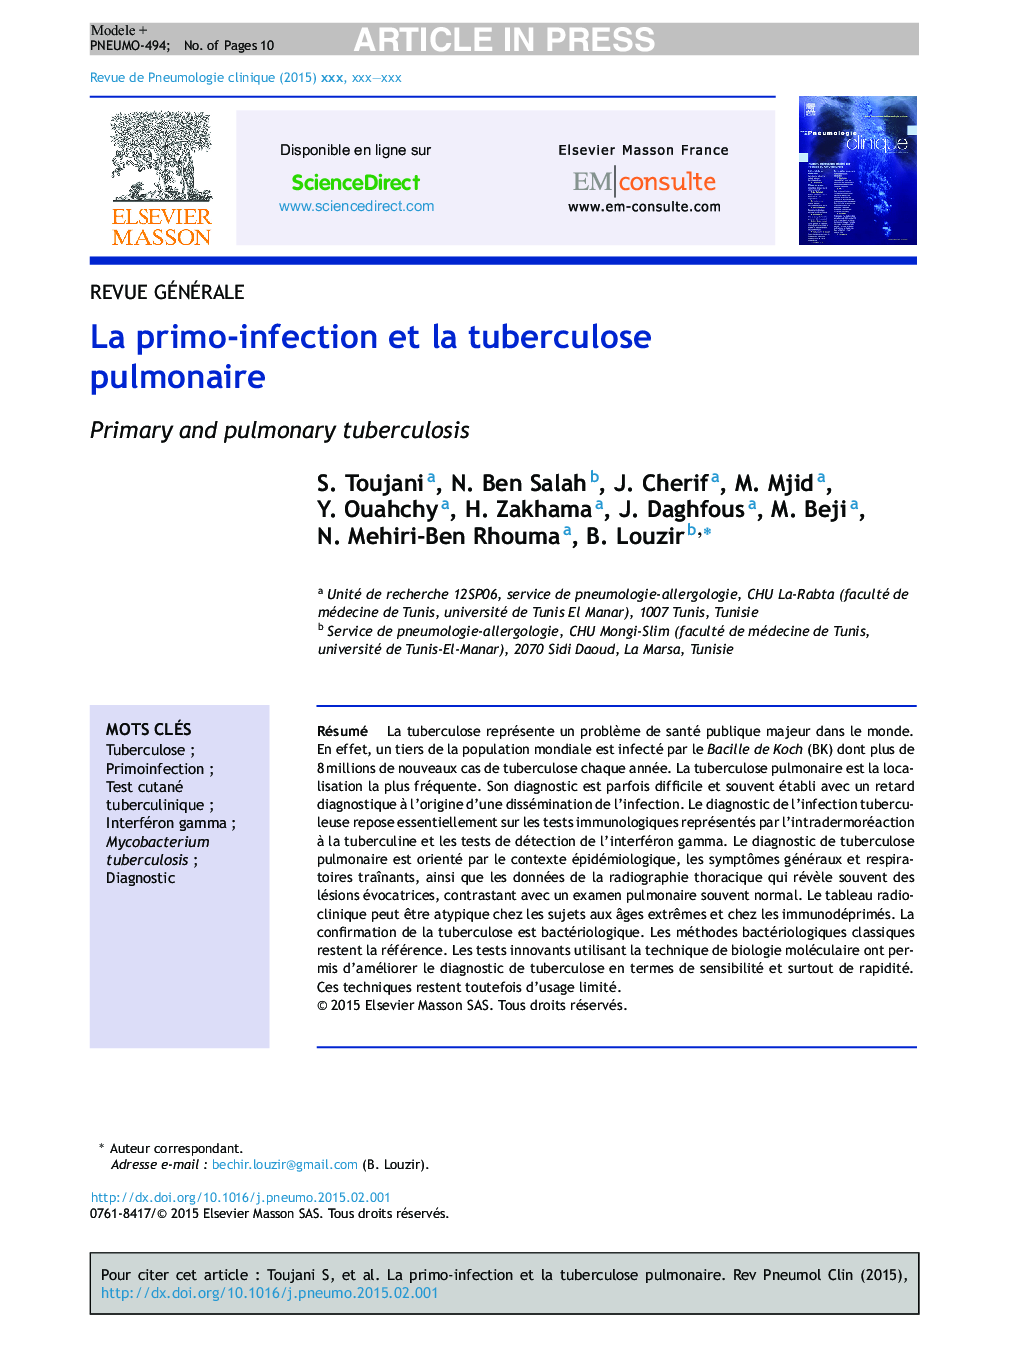 La primo-infection et la tuberculose pulmonaire